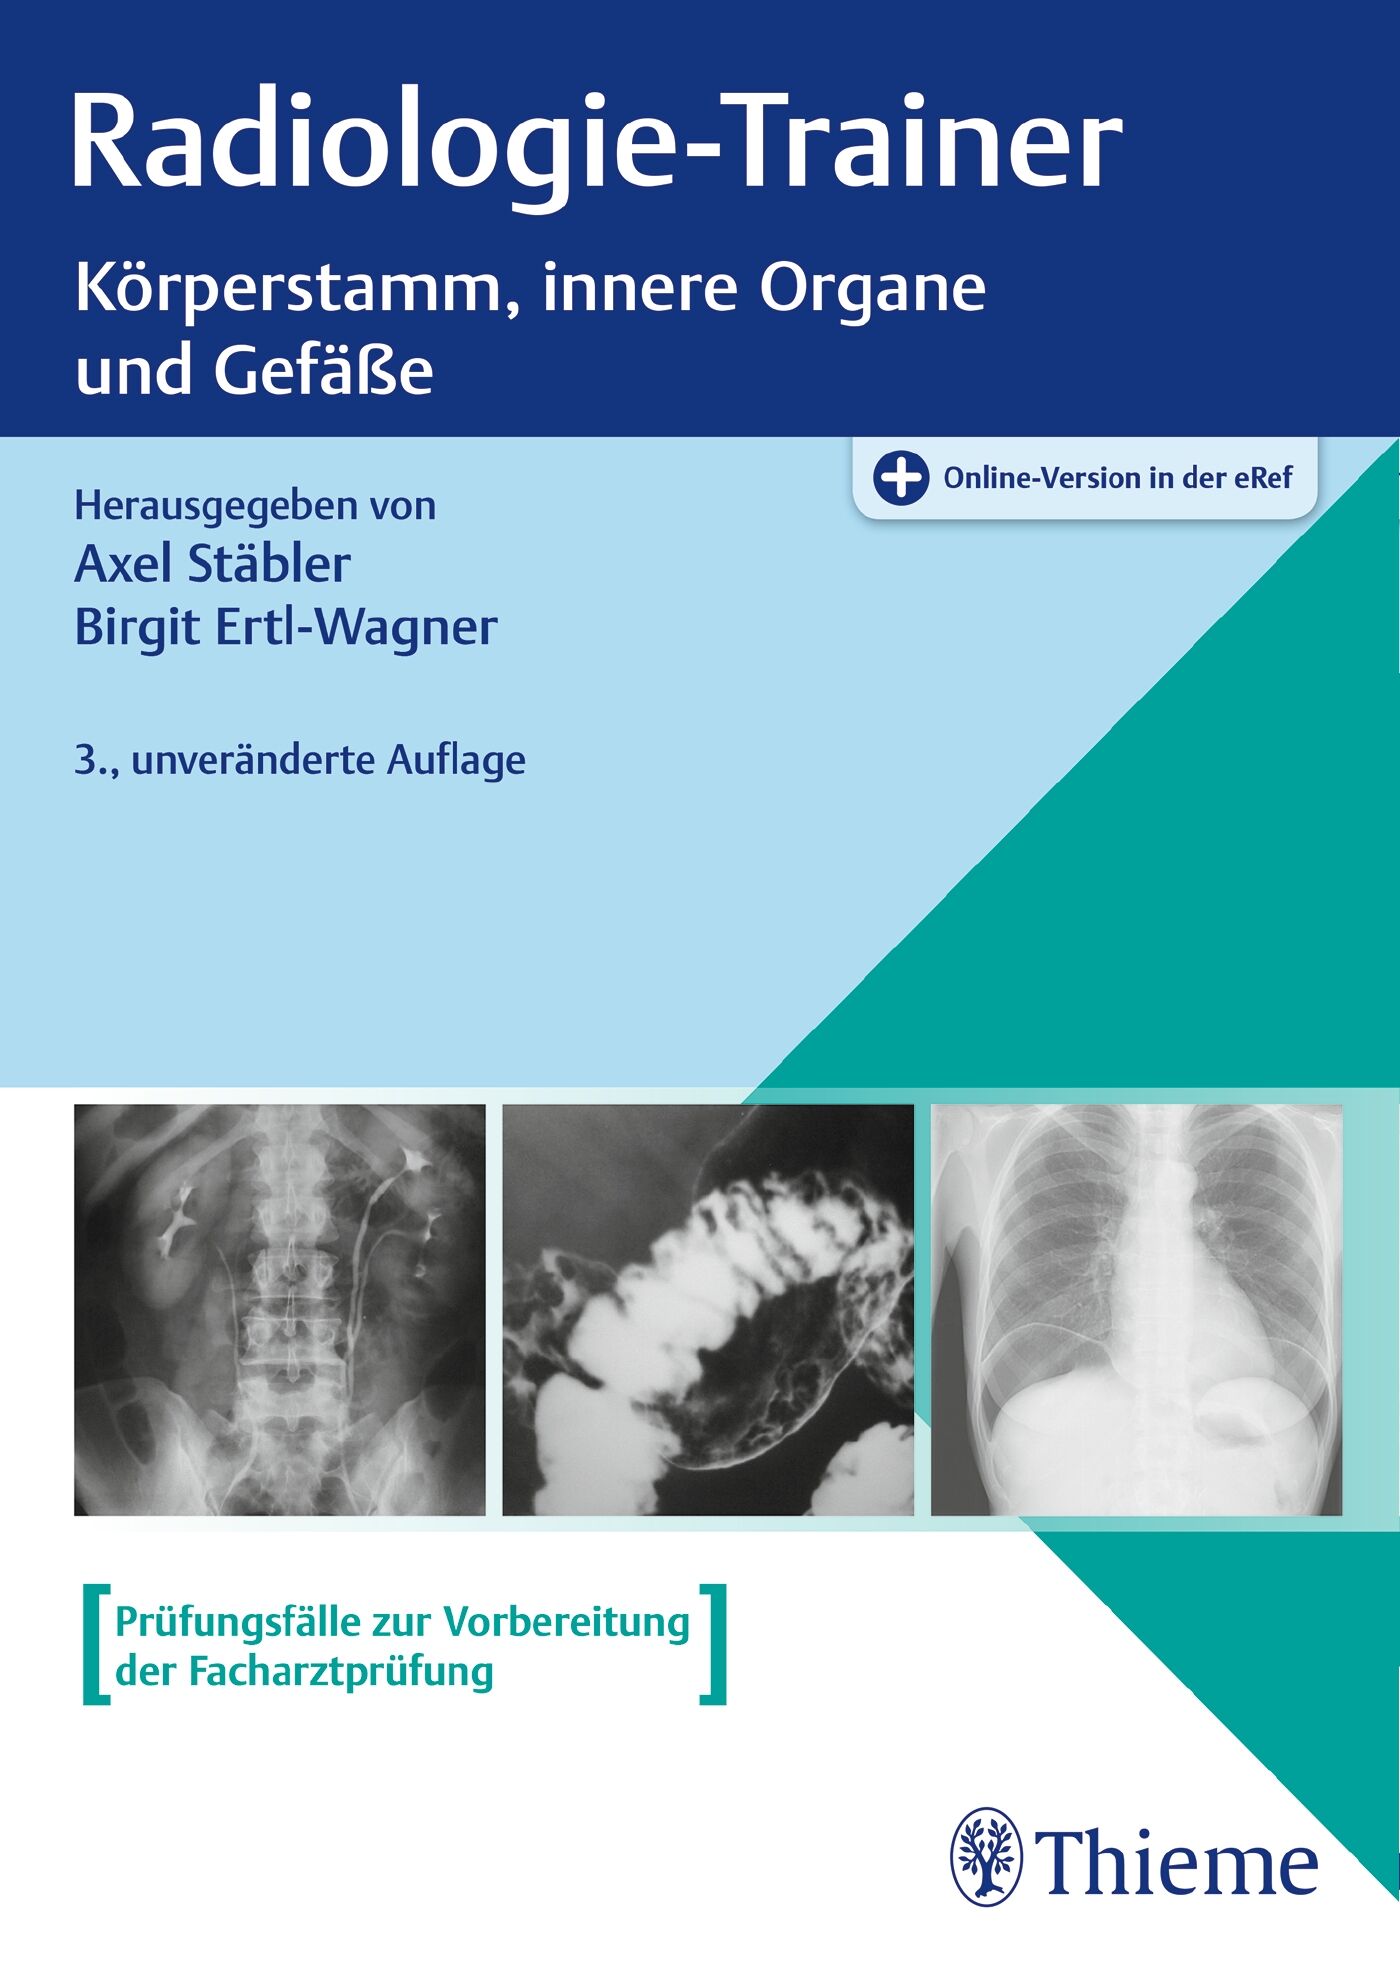 Radiologie-Trainer Körperstamm, innere Organe und Gefäße, 9783132418974